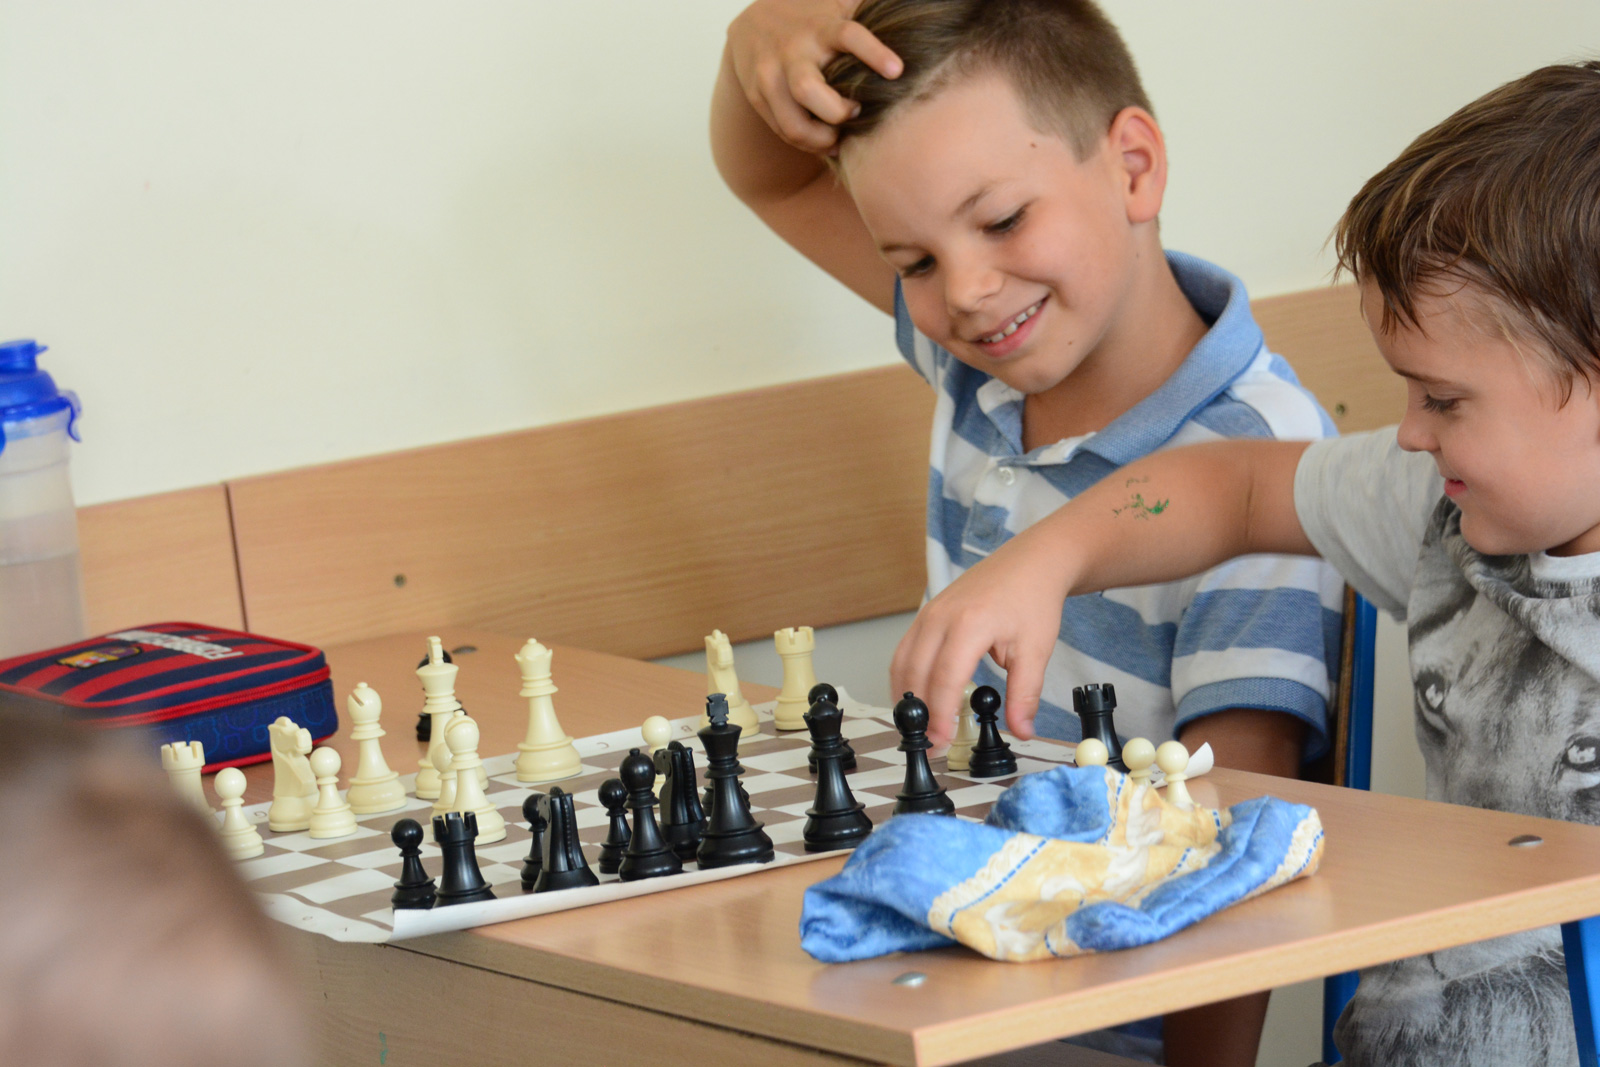 Sakkoktatás vidáman a székesfehérvári sakktáborban